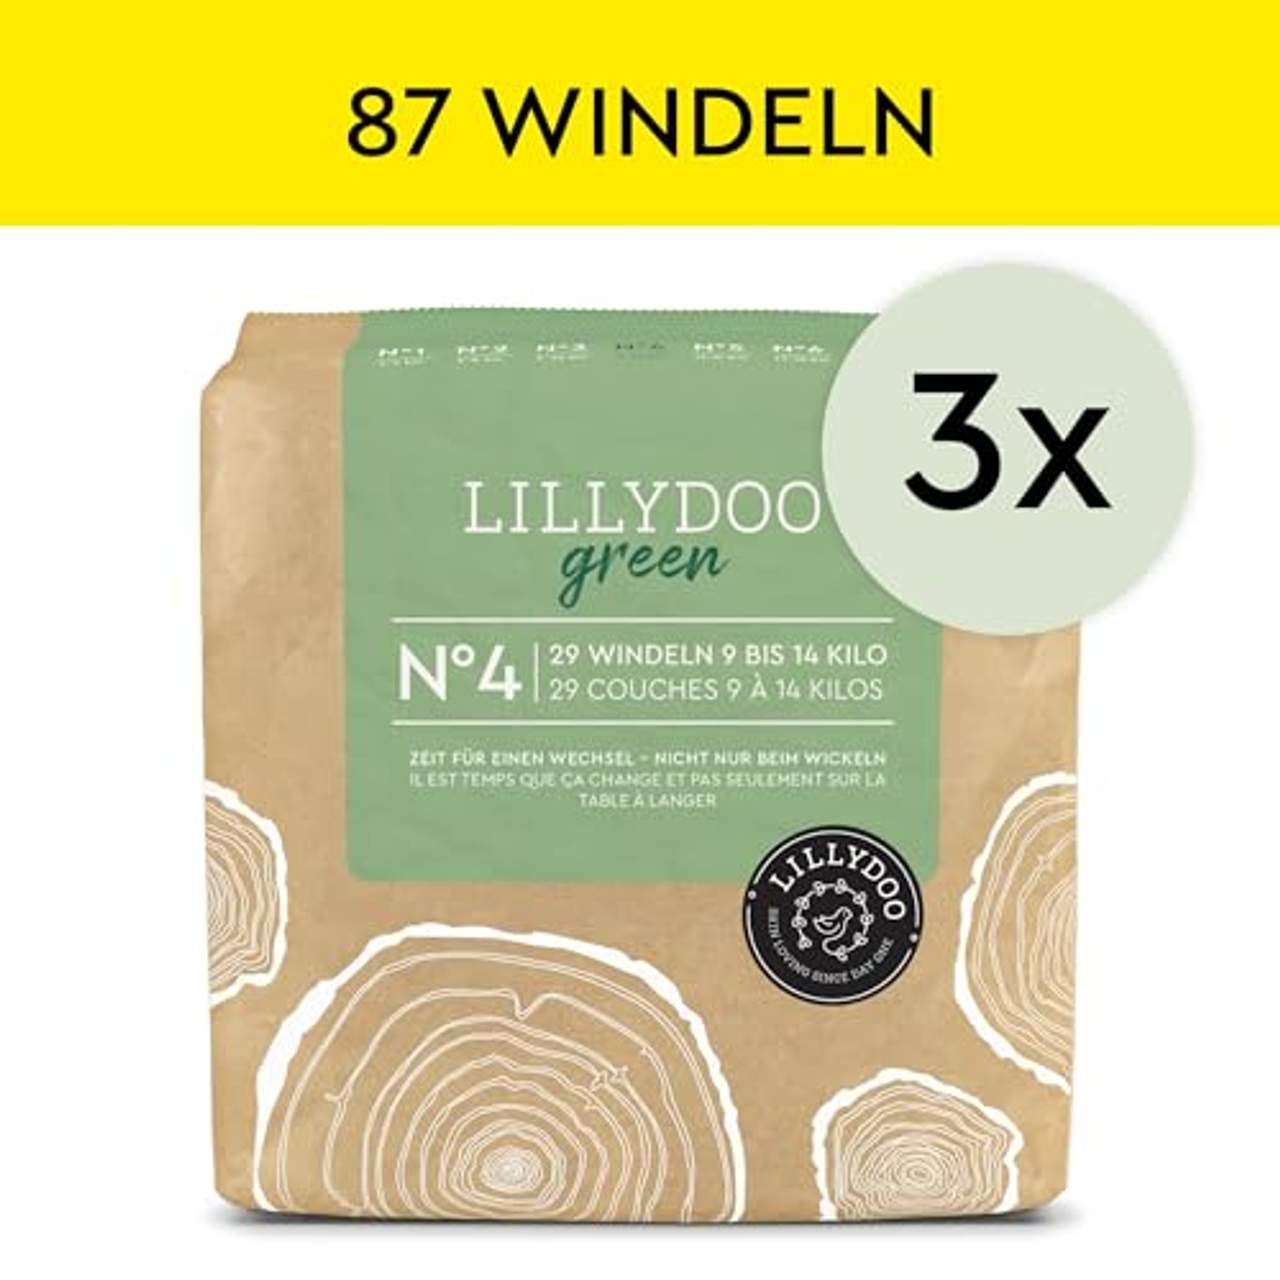 LILLYDOO green umweltschonende Windeln